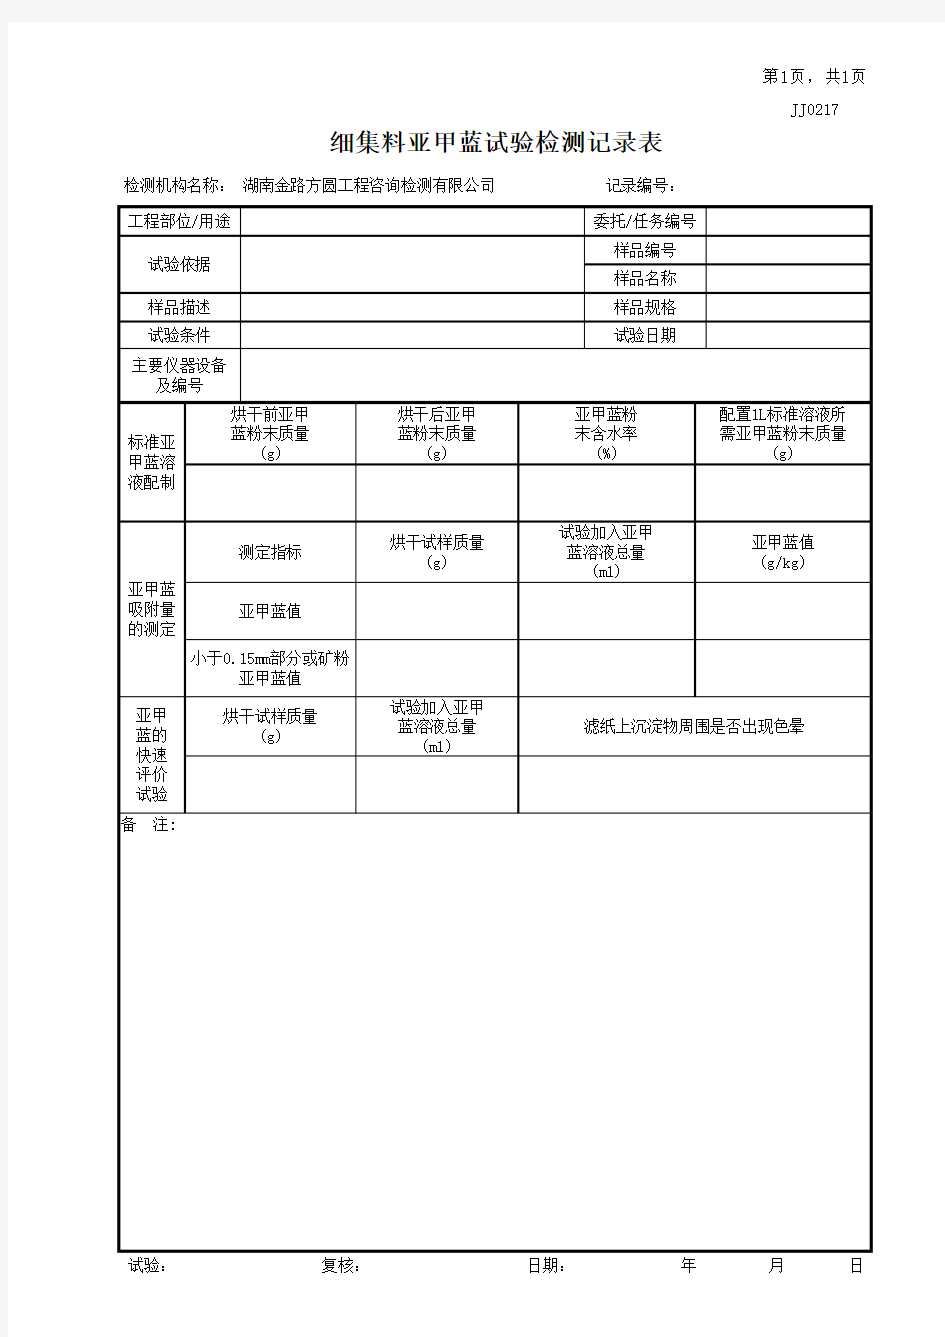 JJ0217细集料亚甲蓝试验检测记录表